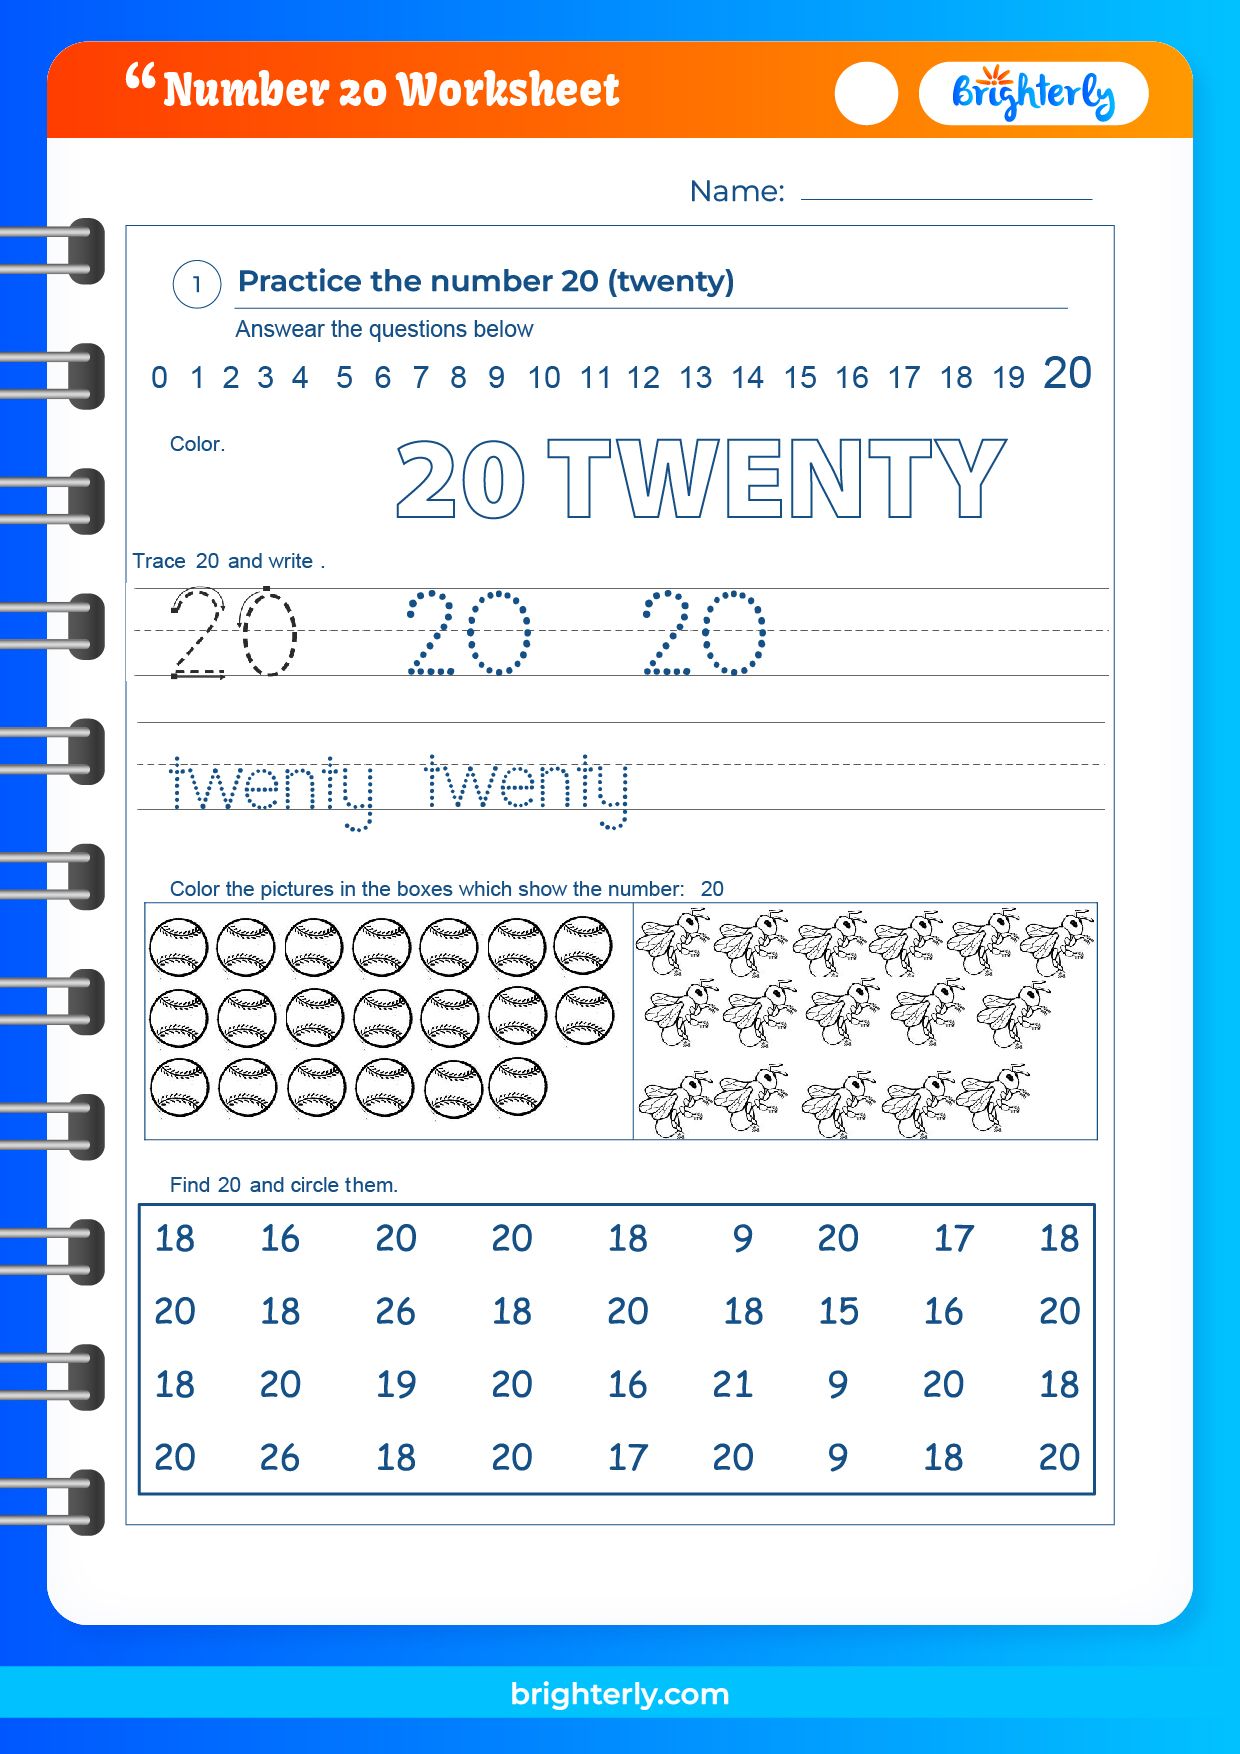 free-printable-number-20-twenty-worksheets-for-kids-pdfs